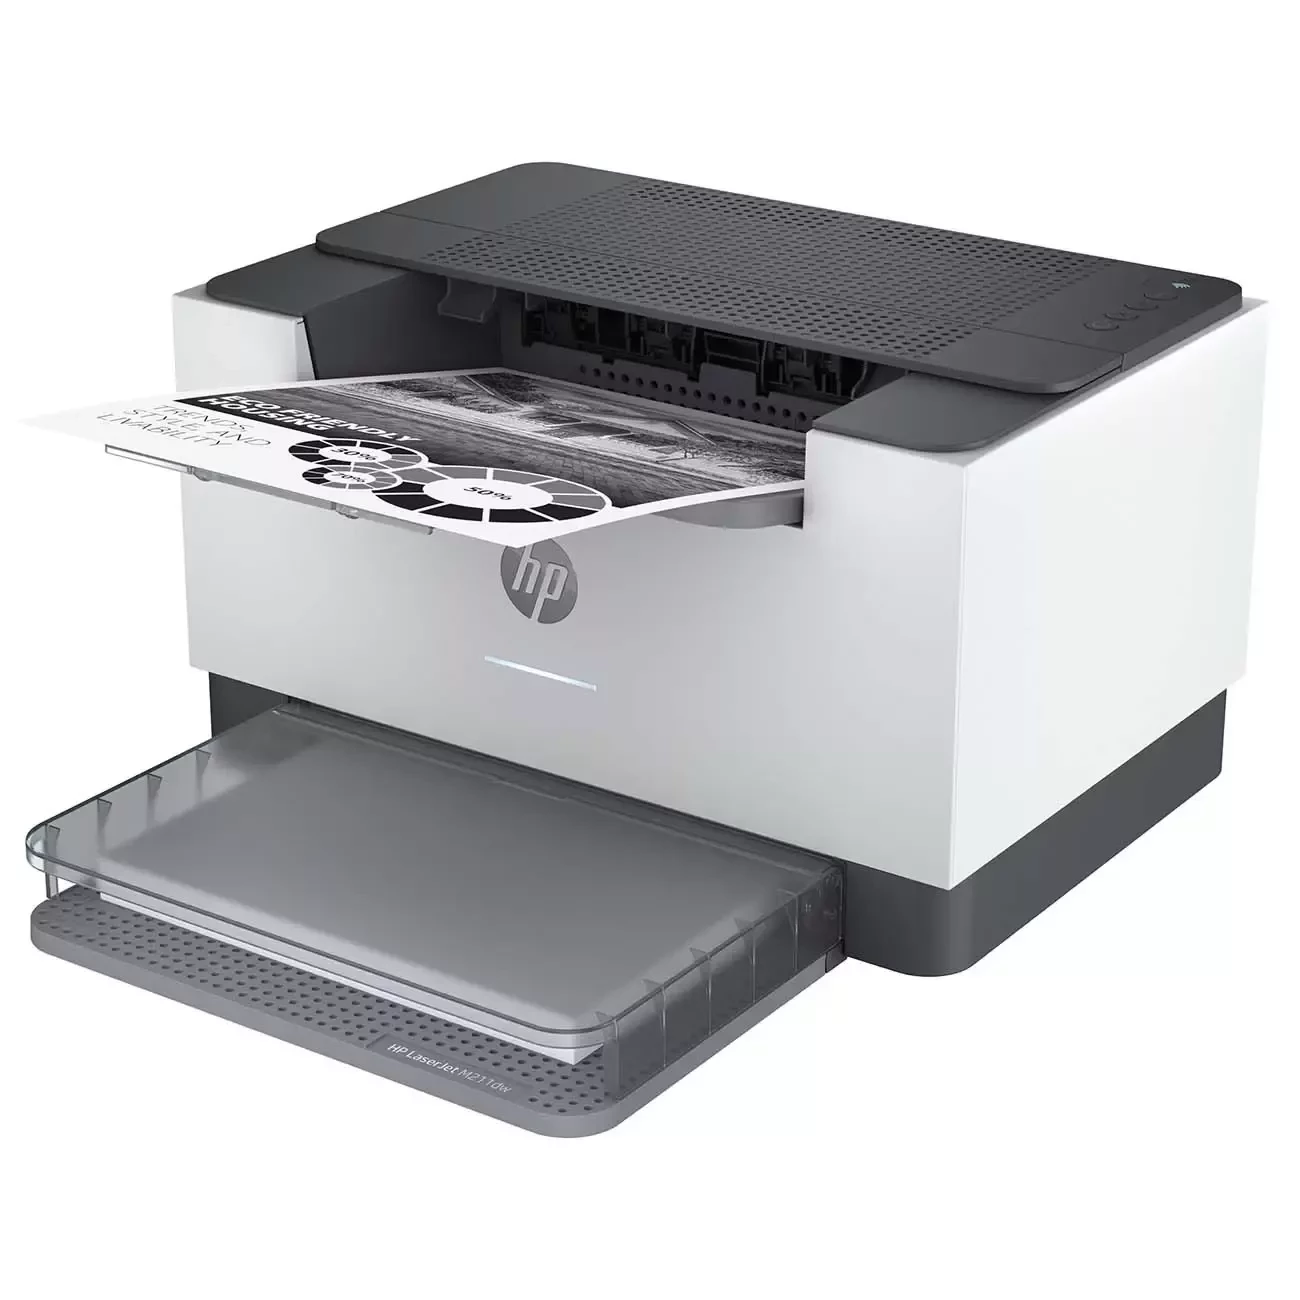 Printer HP LaserJet Pro M211dw



